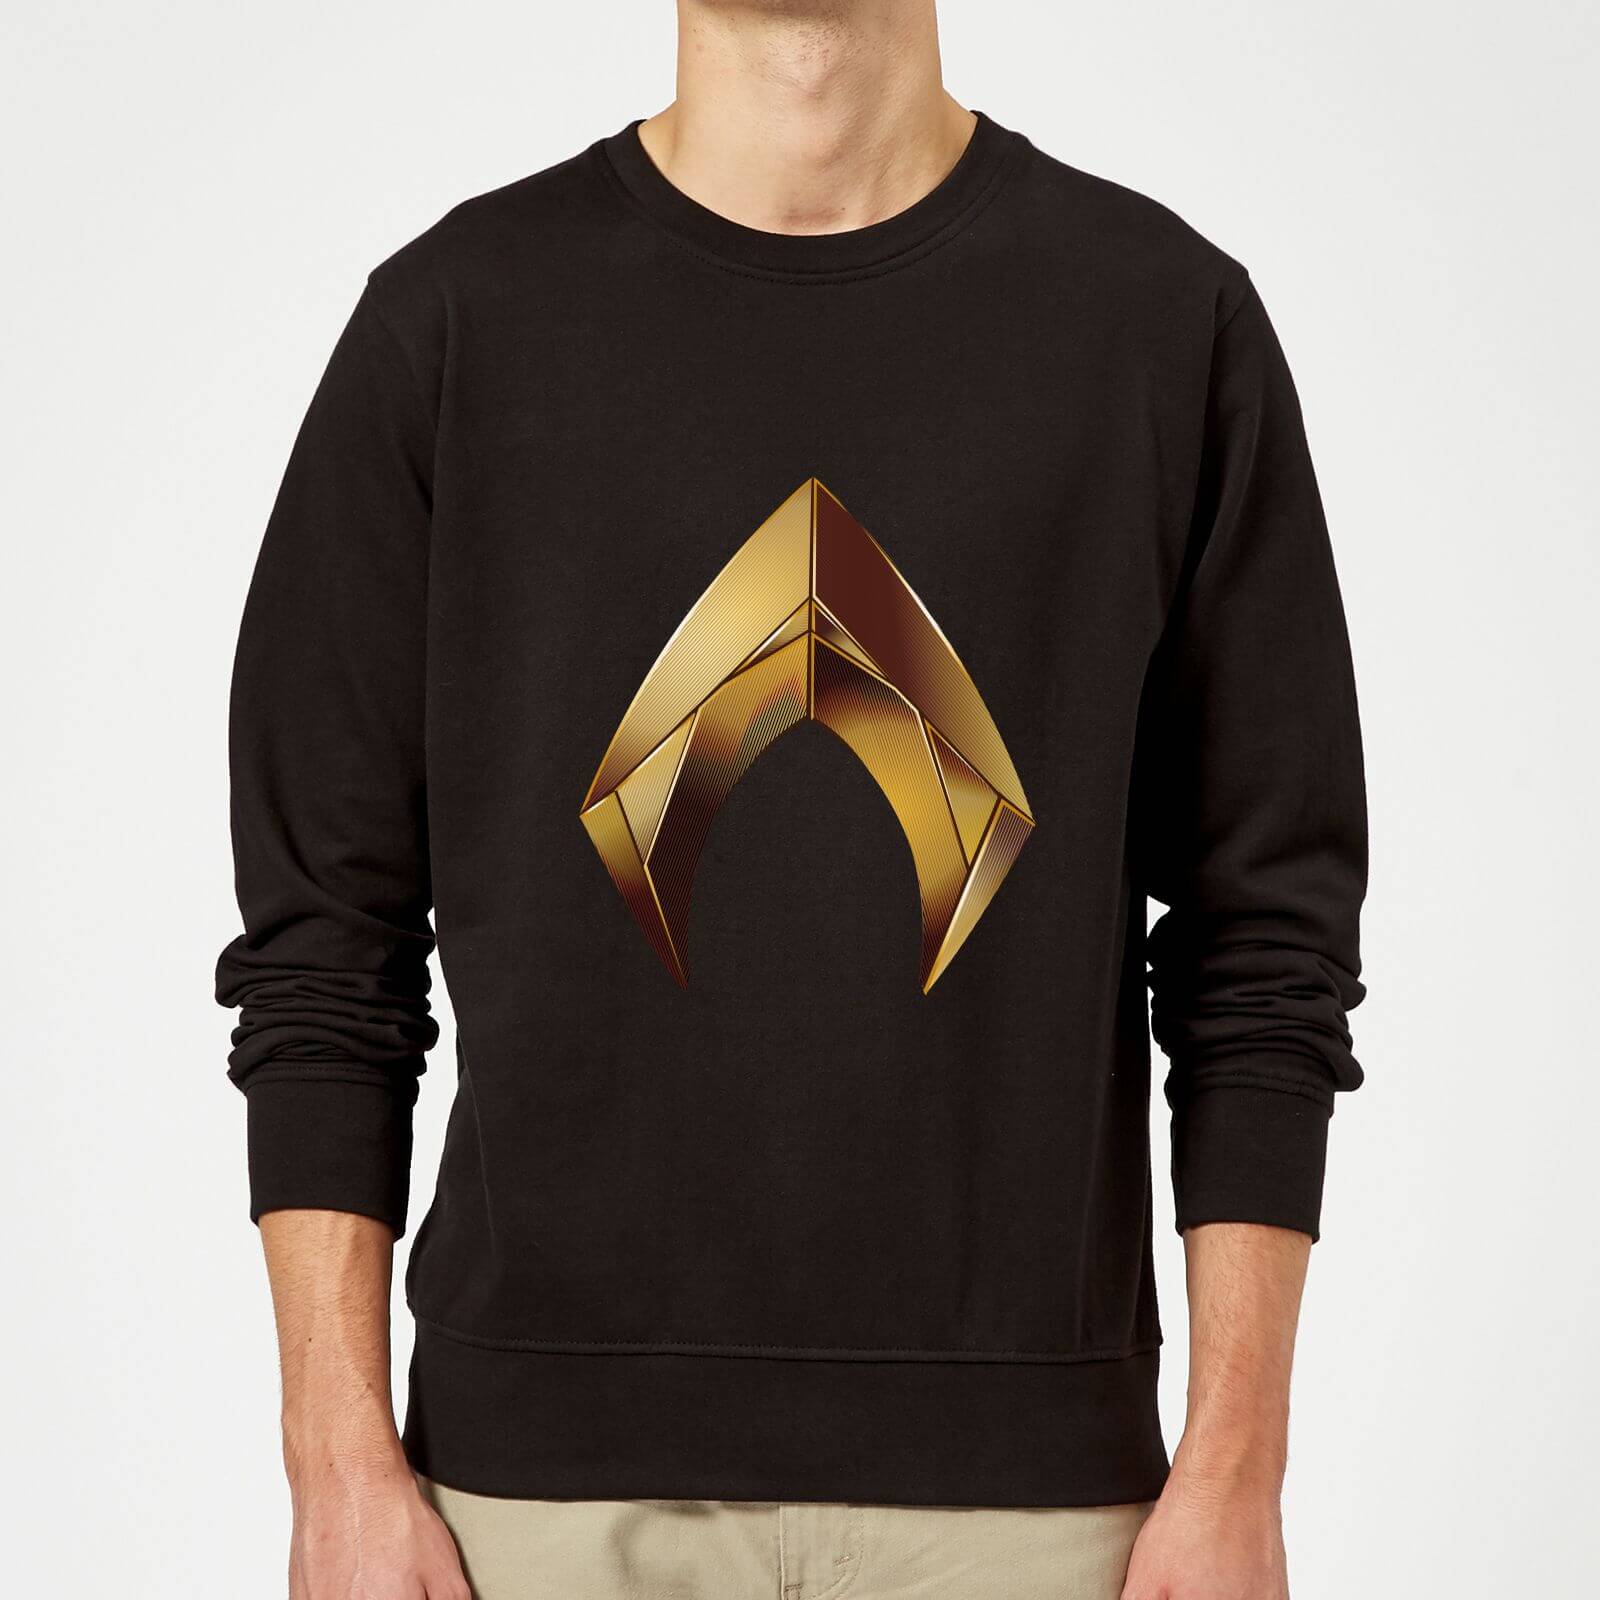 aquaman symbol sweatshirt - black - xxl - nero